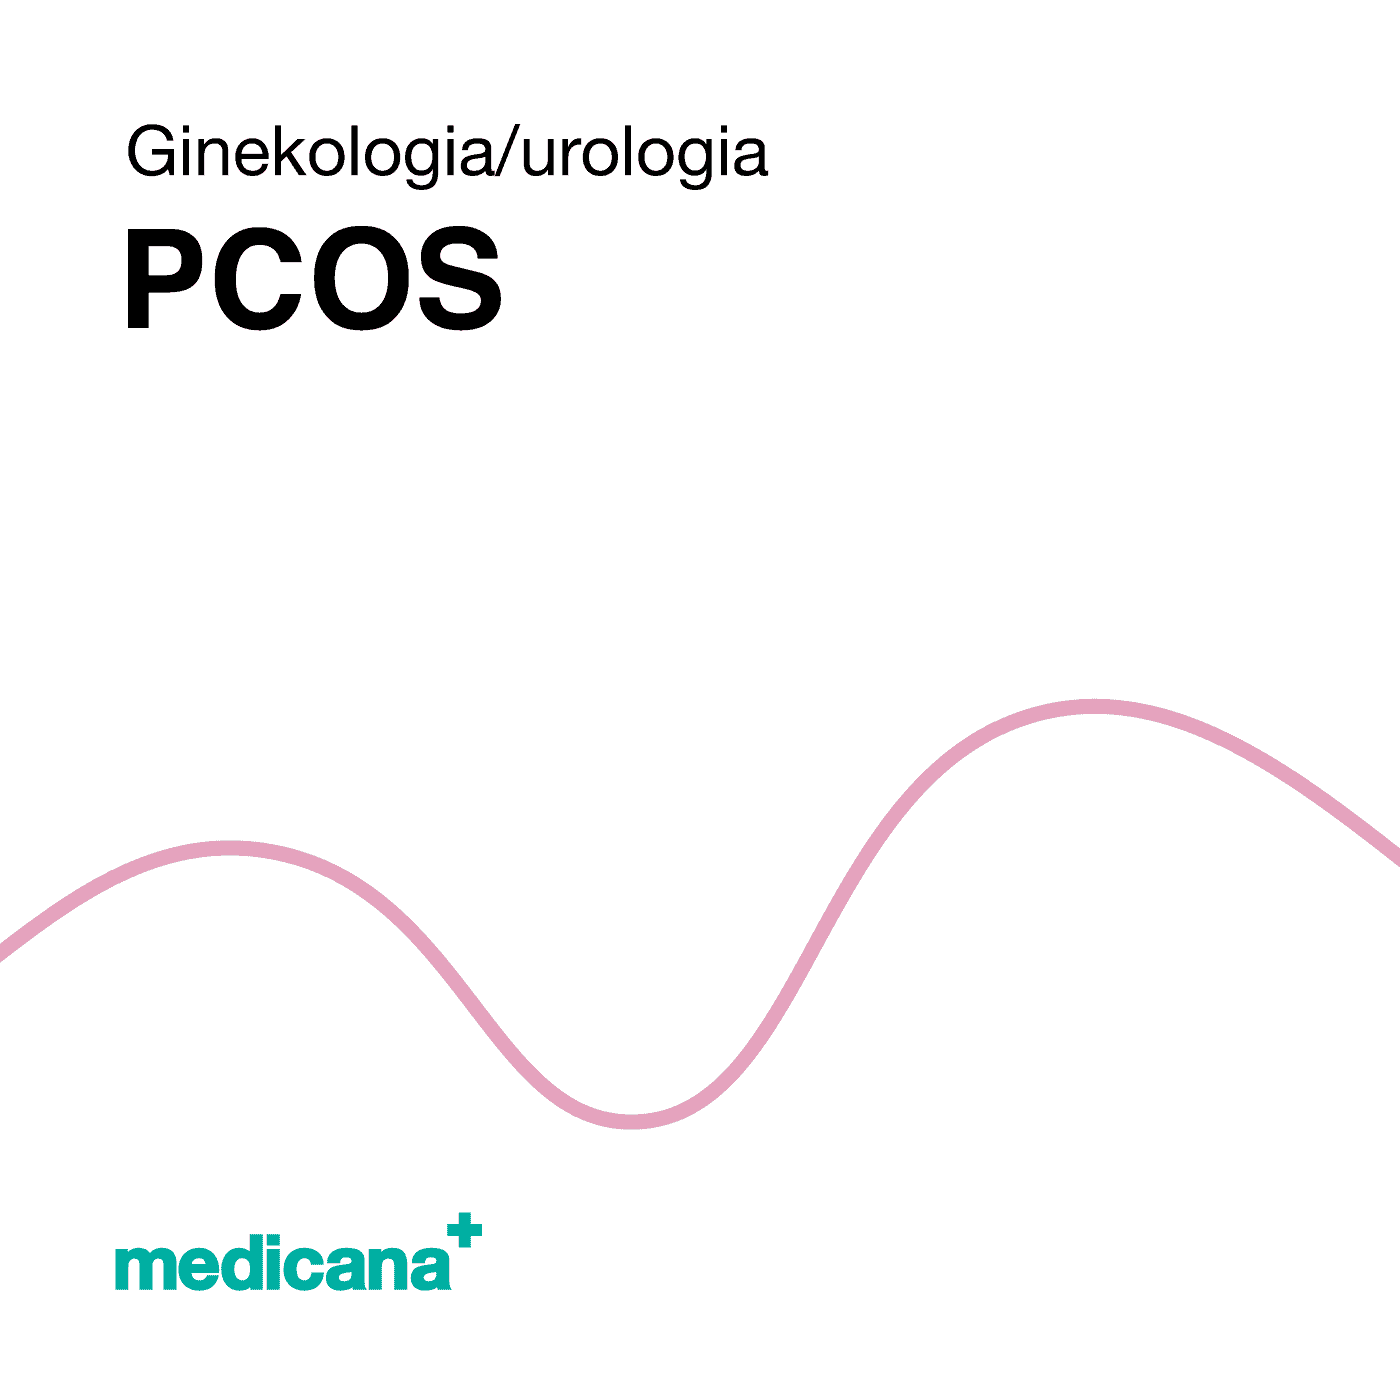 Grafika, białe tło różową kreską, czarnym napisem Ginekologia / Urologia - PCOS i logo Medicana Centrum Terapii Medyczna Marihuana w lewym dolnym rogu.